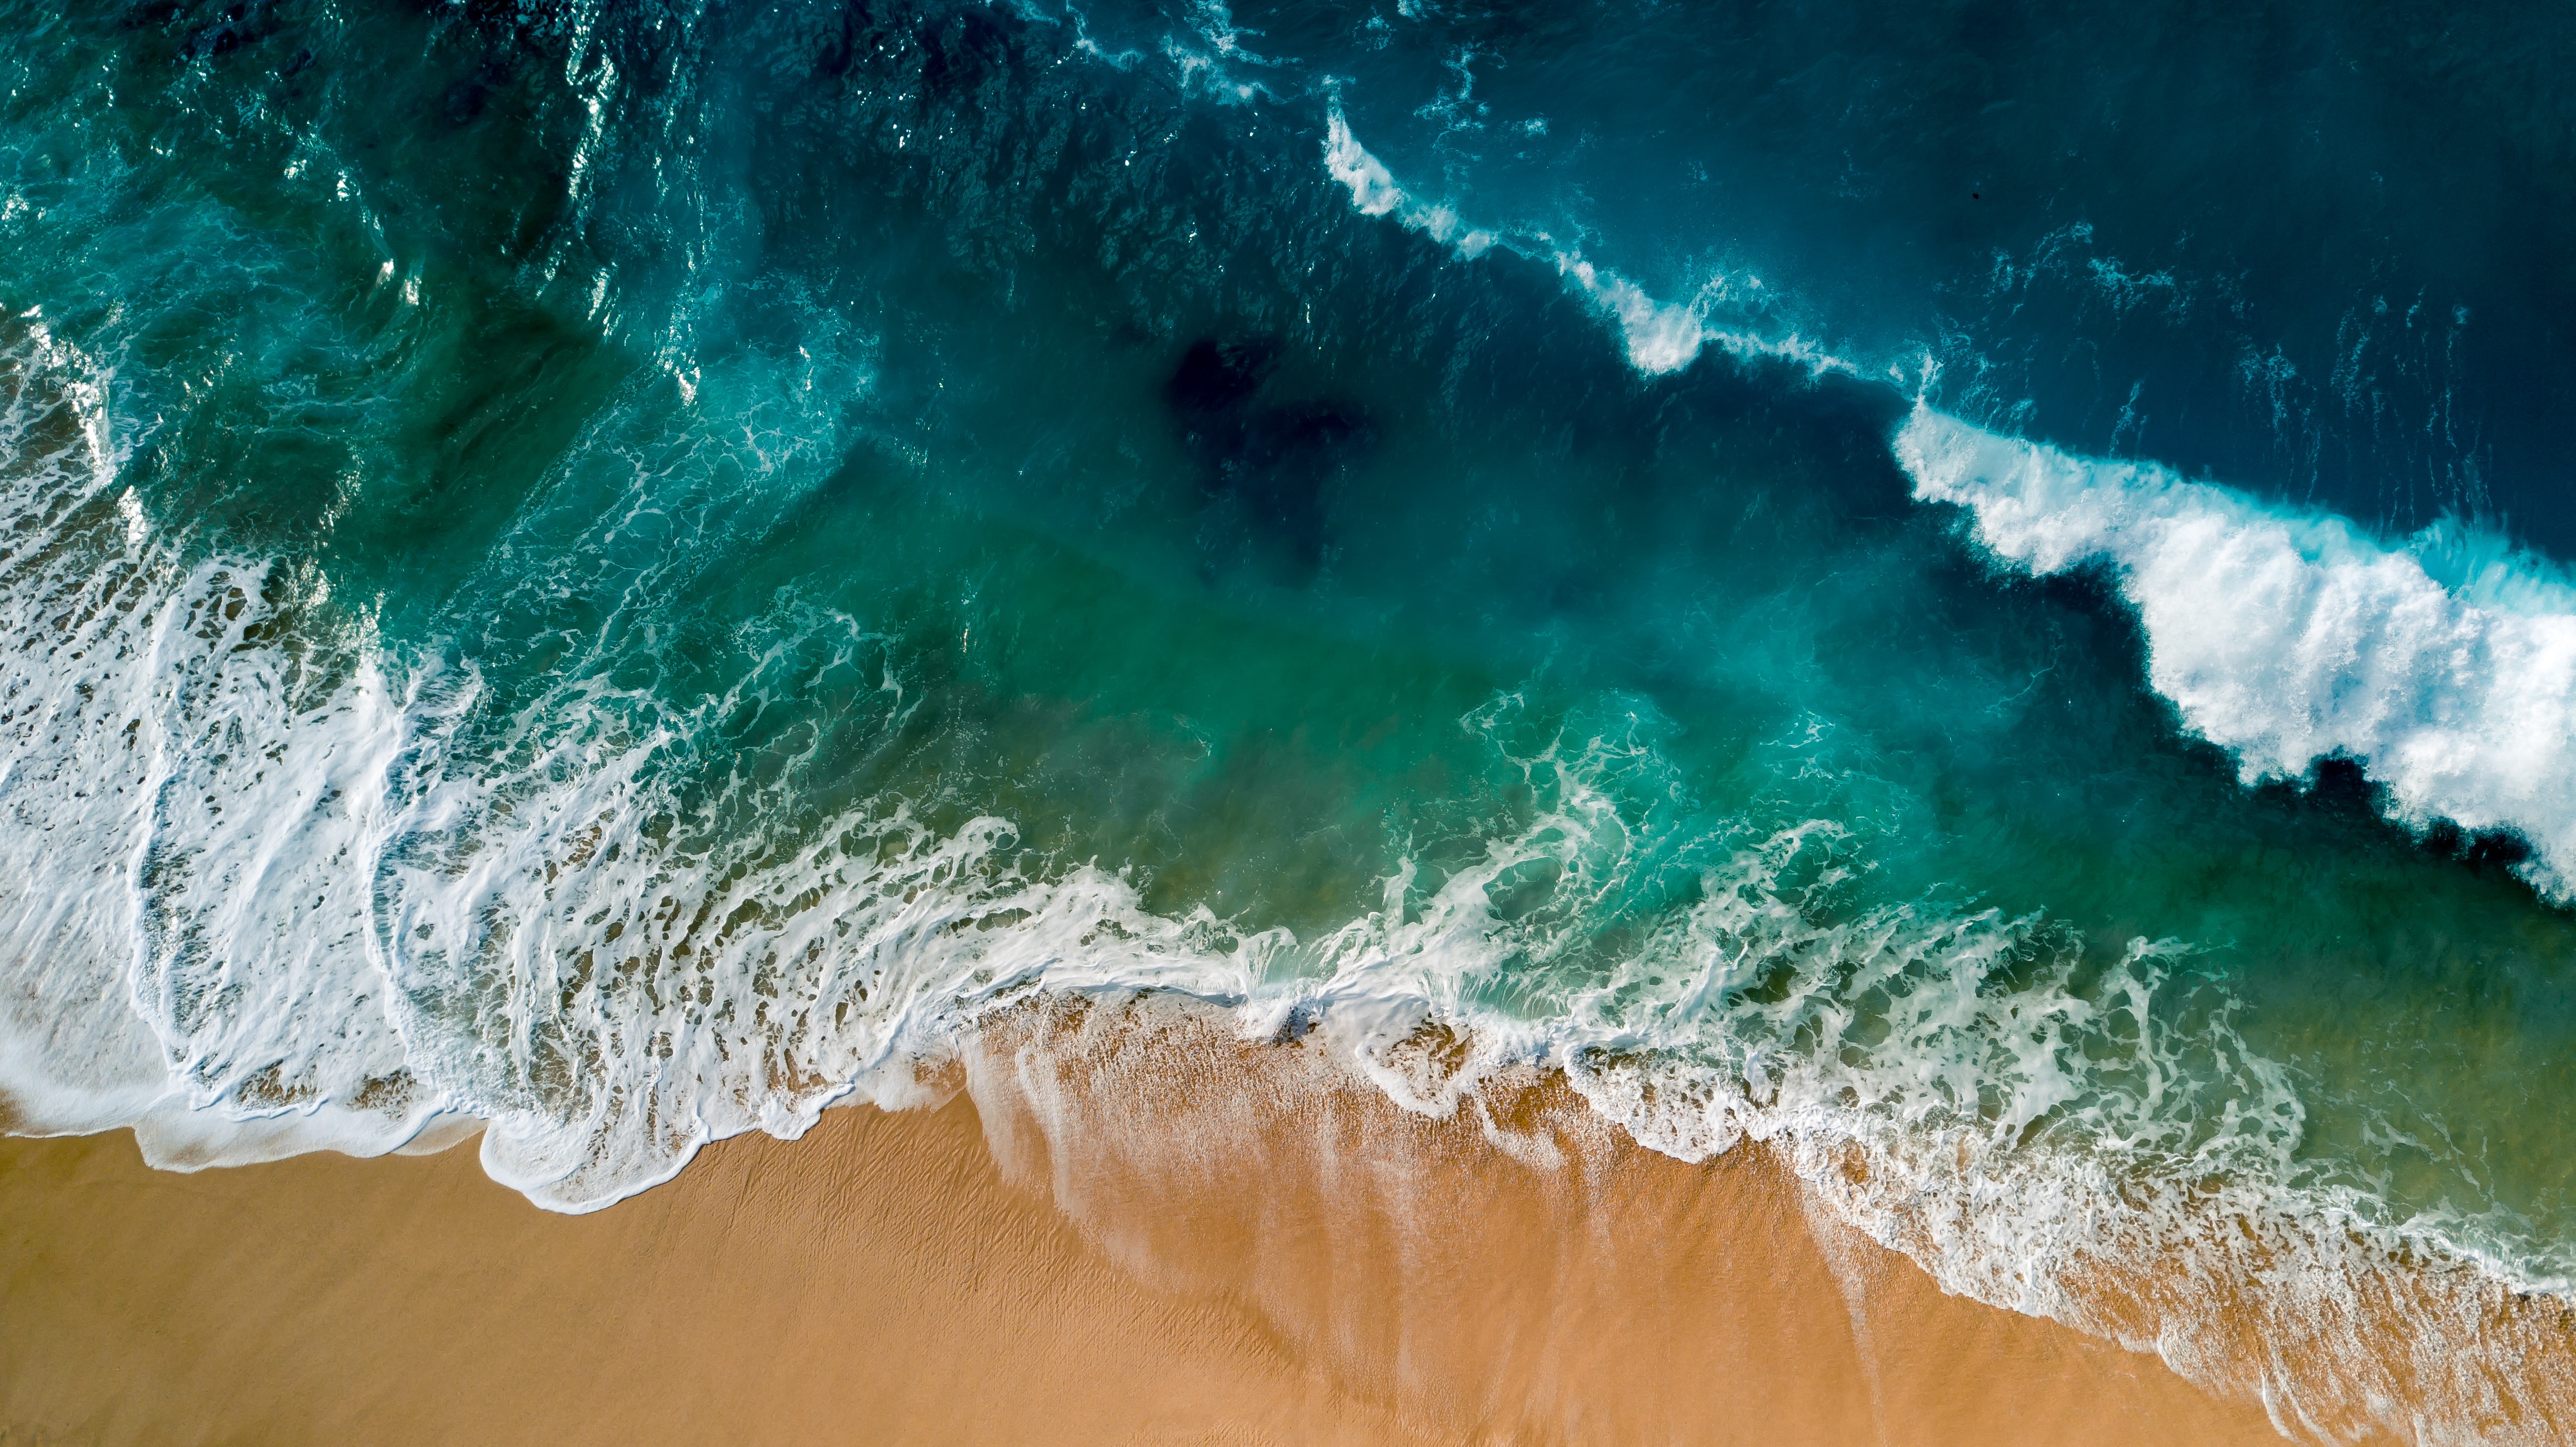 Обои iphone высокого качества. Море, волны. Океан. Заставка море. Пляж волны.